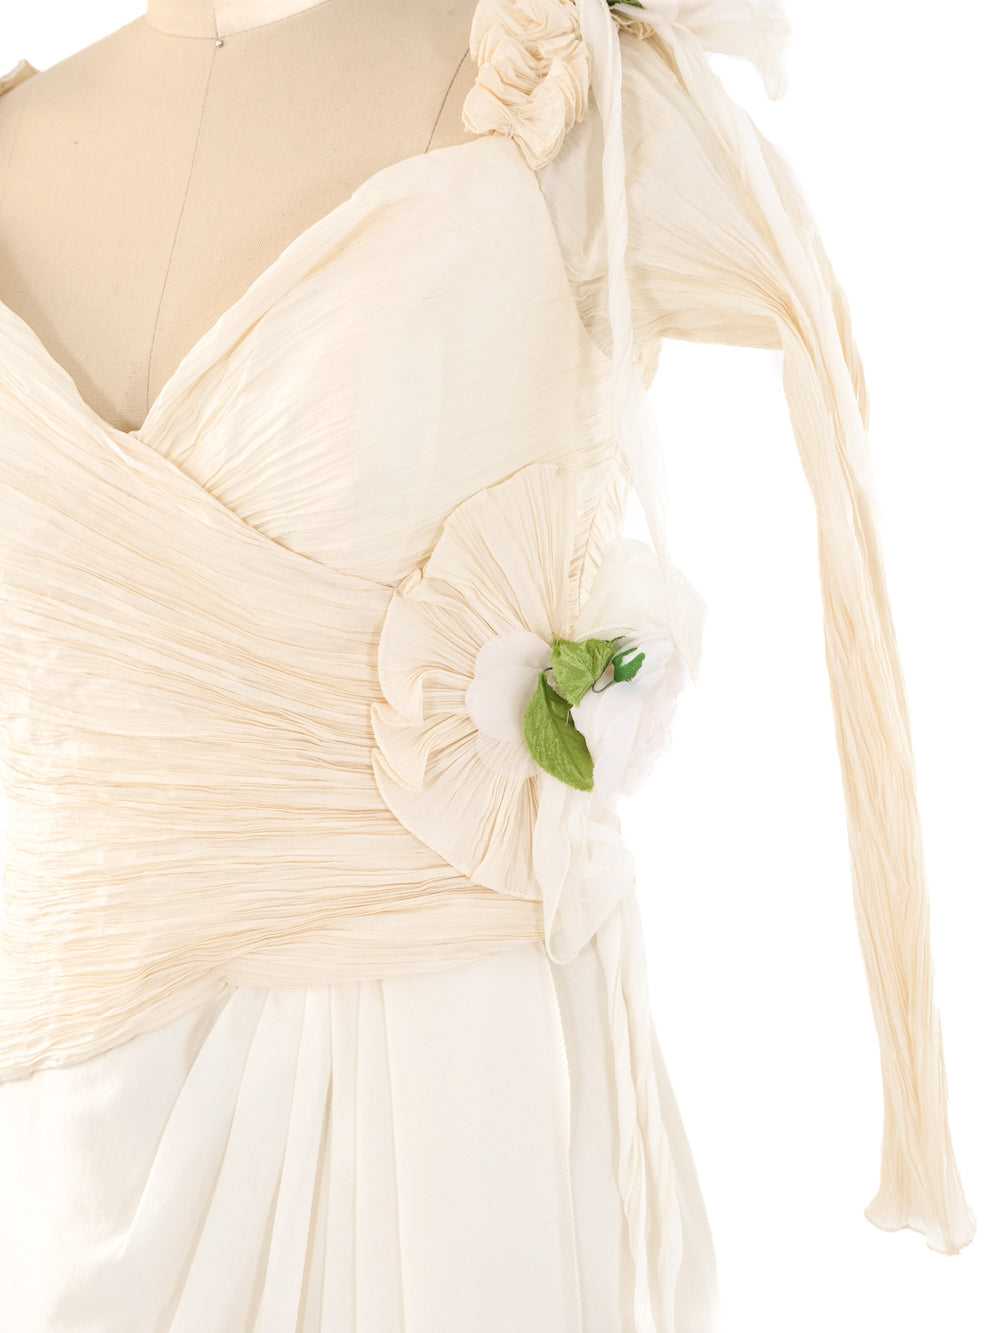 Zandra Rhodes Floral Embellished Dress - image 4